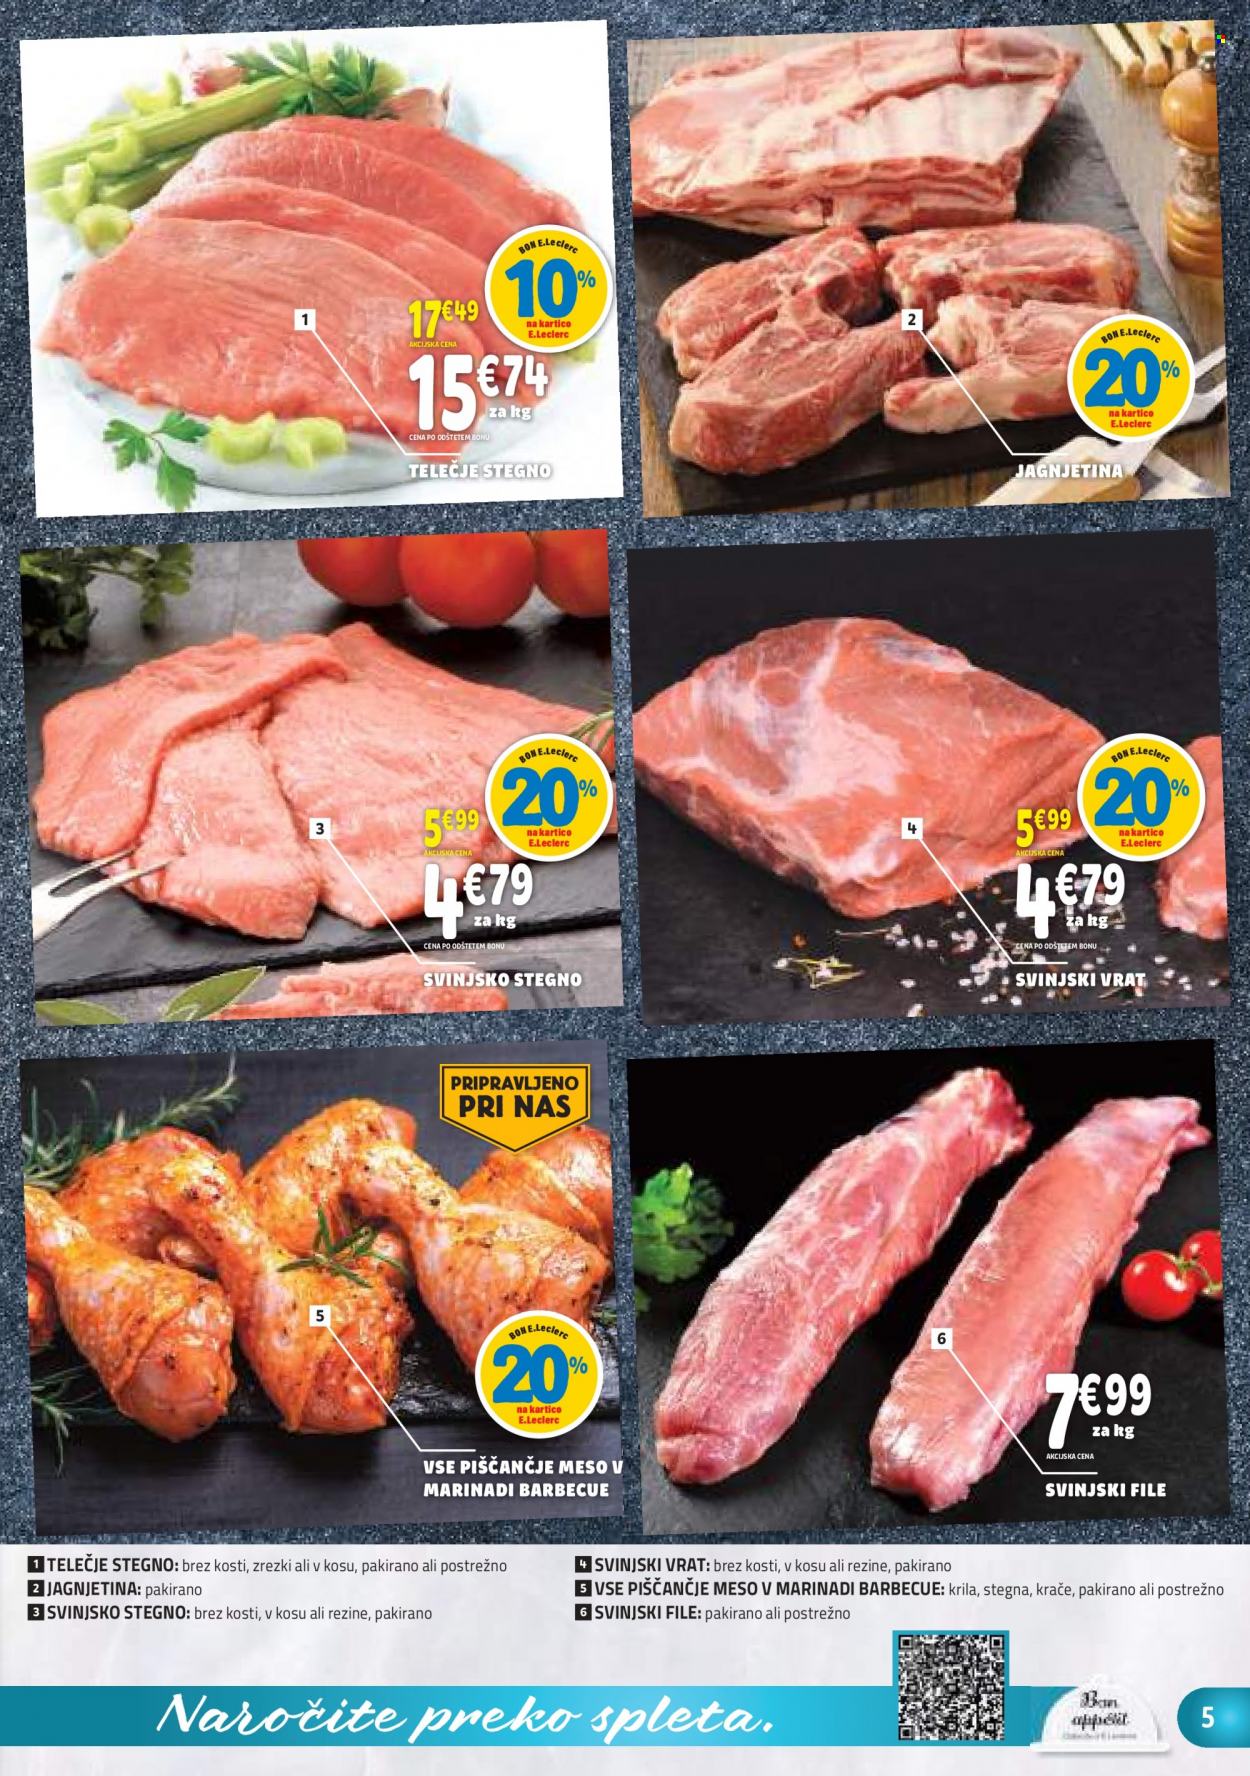 thumbnail - E.Leclerc katalog - 29.6.2022 - 9.7.2022 - Ponudba izdelkov - stegno, piščančje meso, telečje stegno, teletina, svinjski vrat, svinjsko stegno, svinjsko meso, jagnjetina, krila. Stran 5.